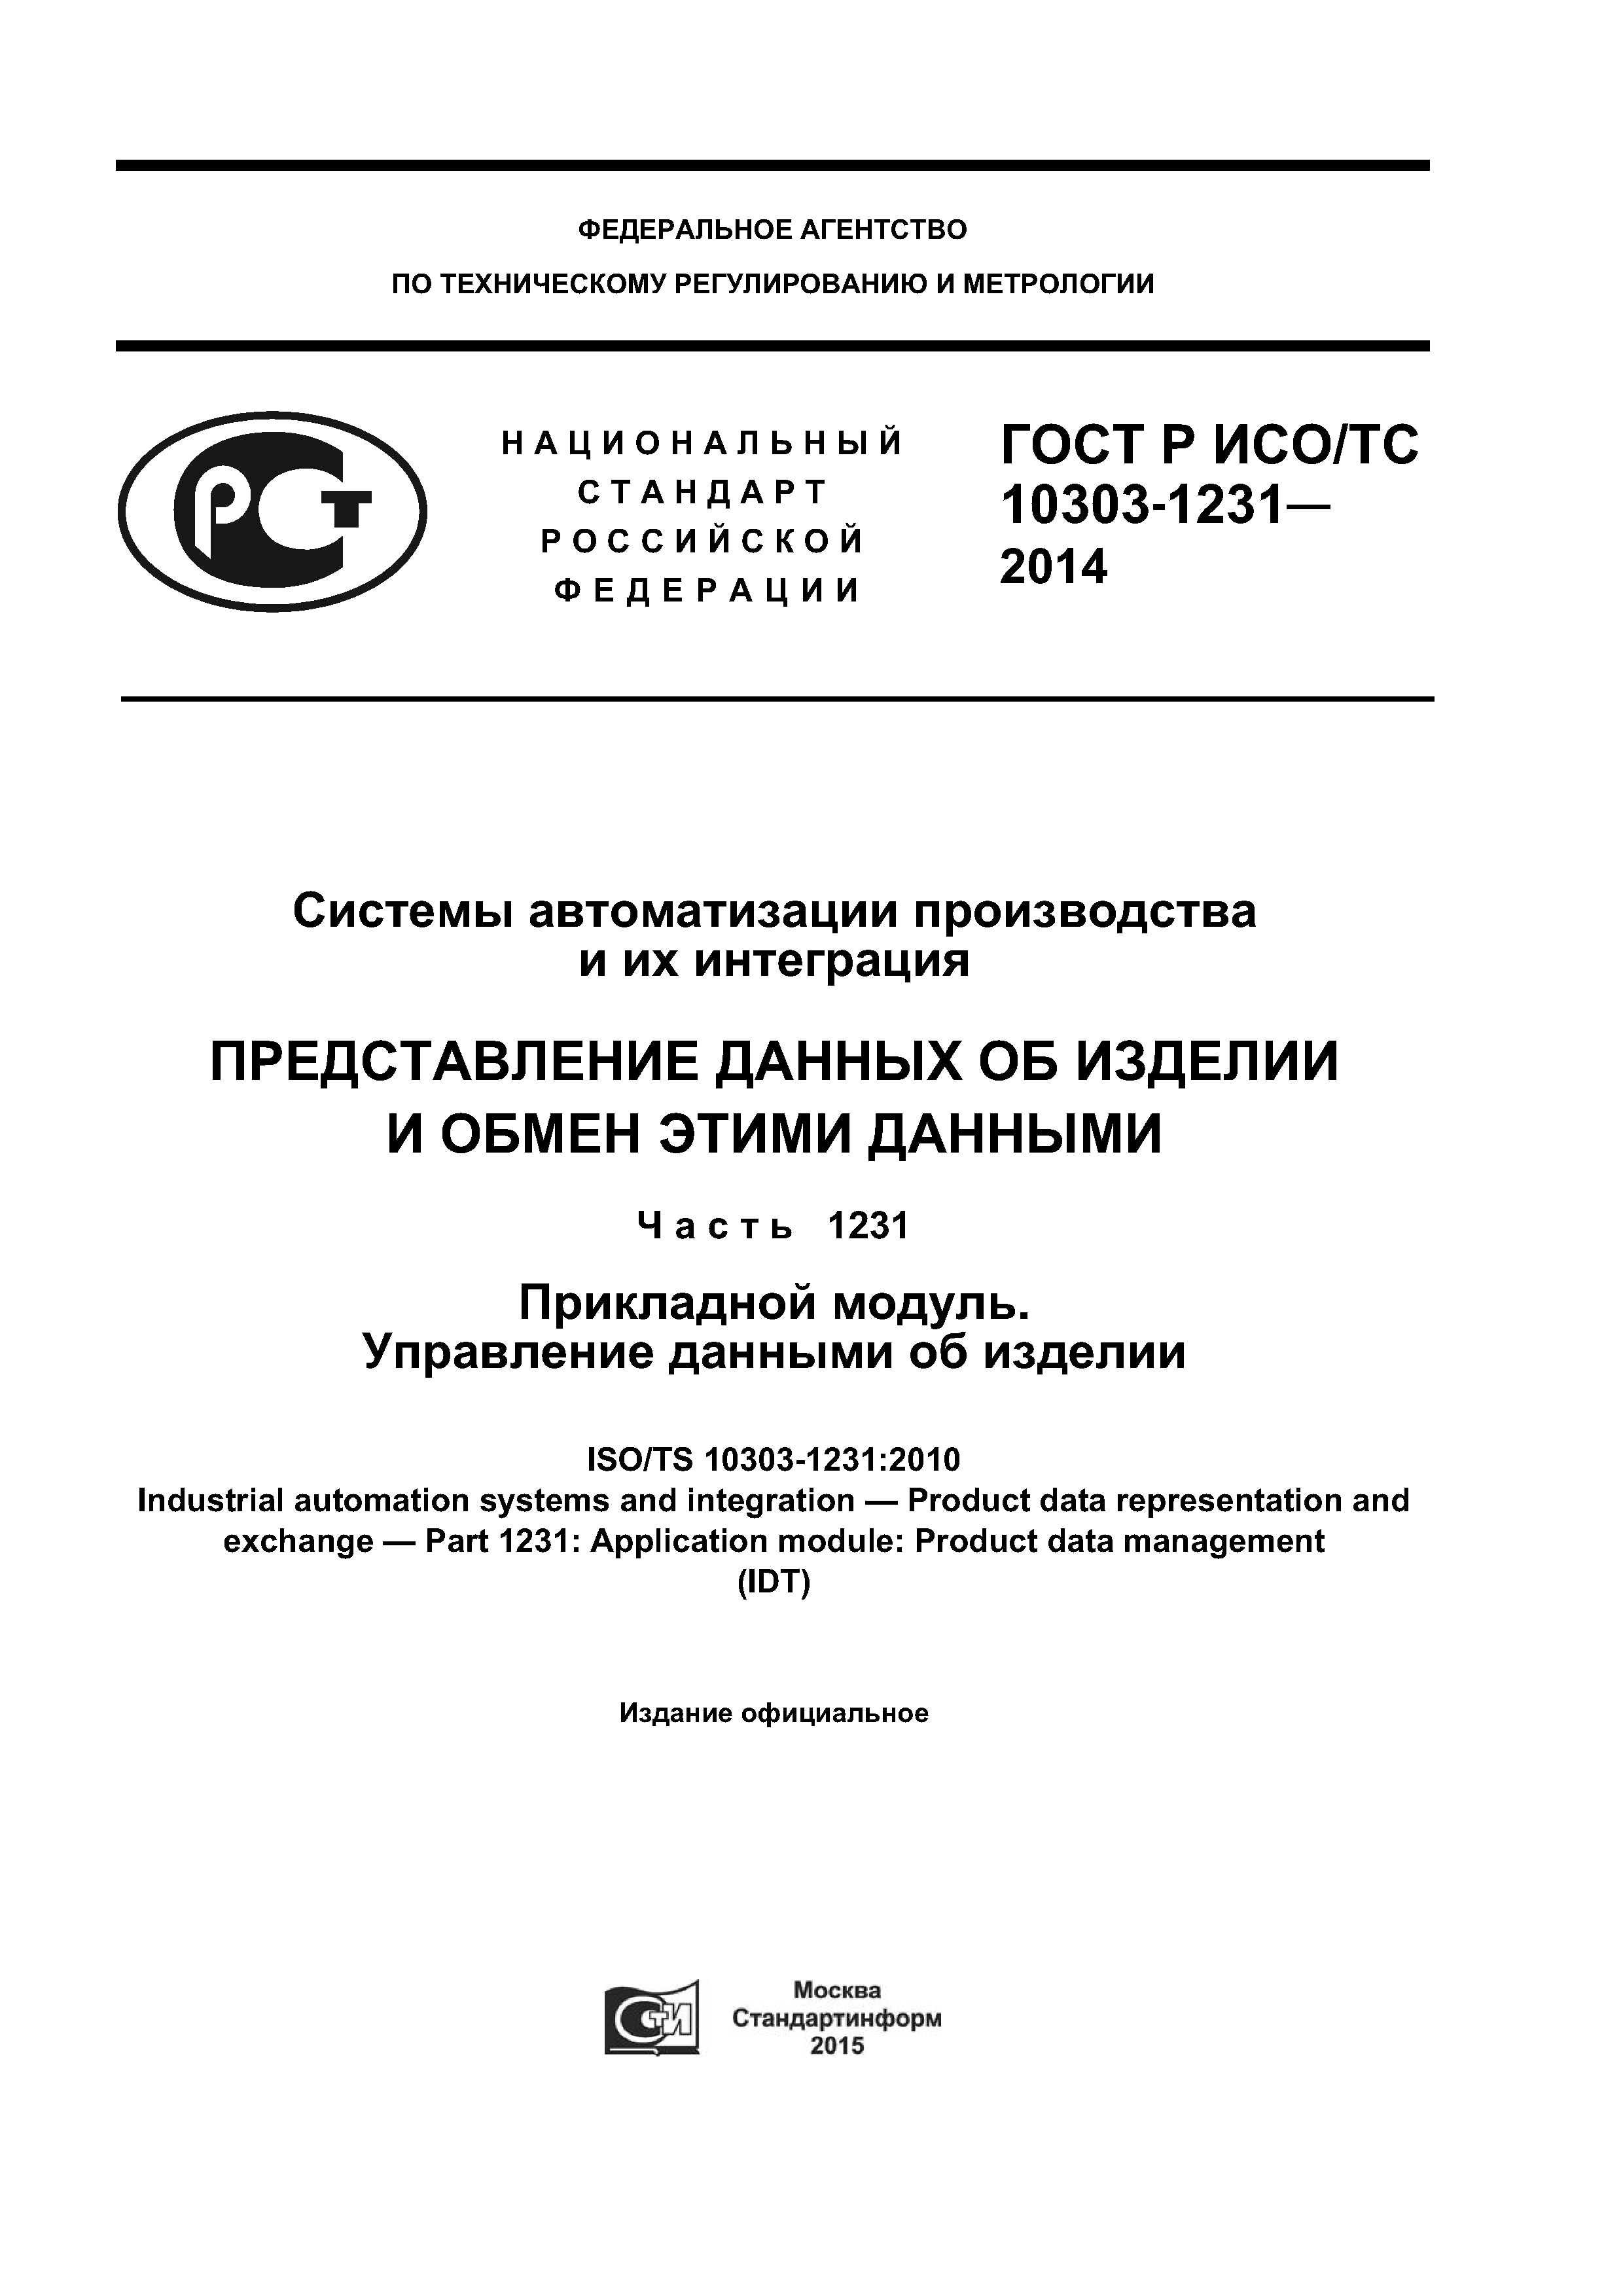 ГОСТ Р ИСО/ТС 10303-1231-2014